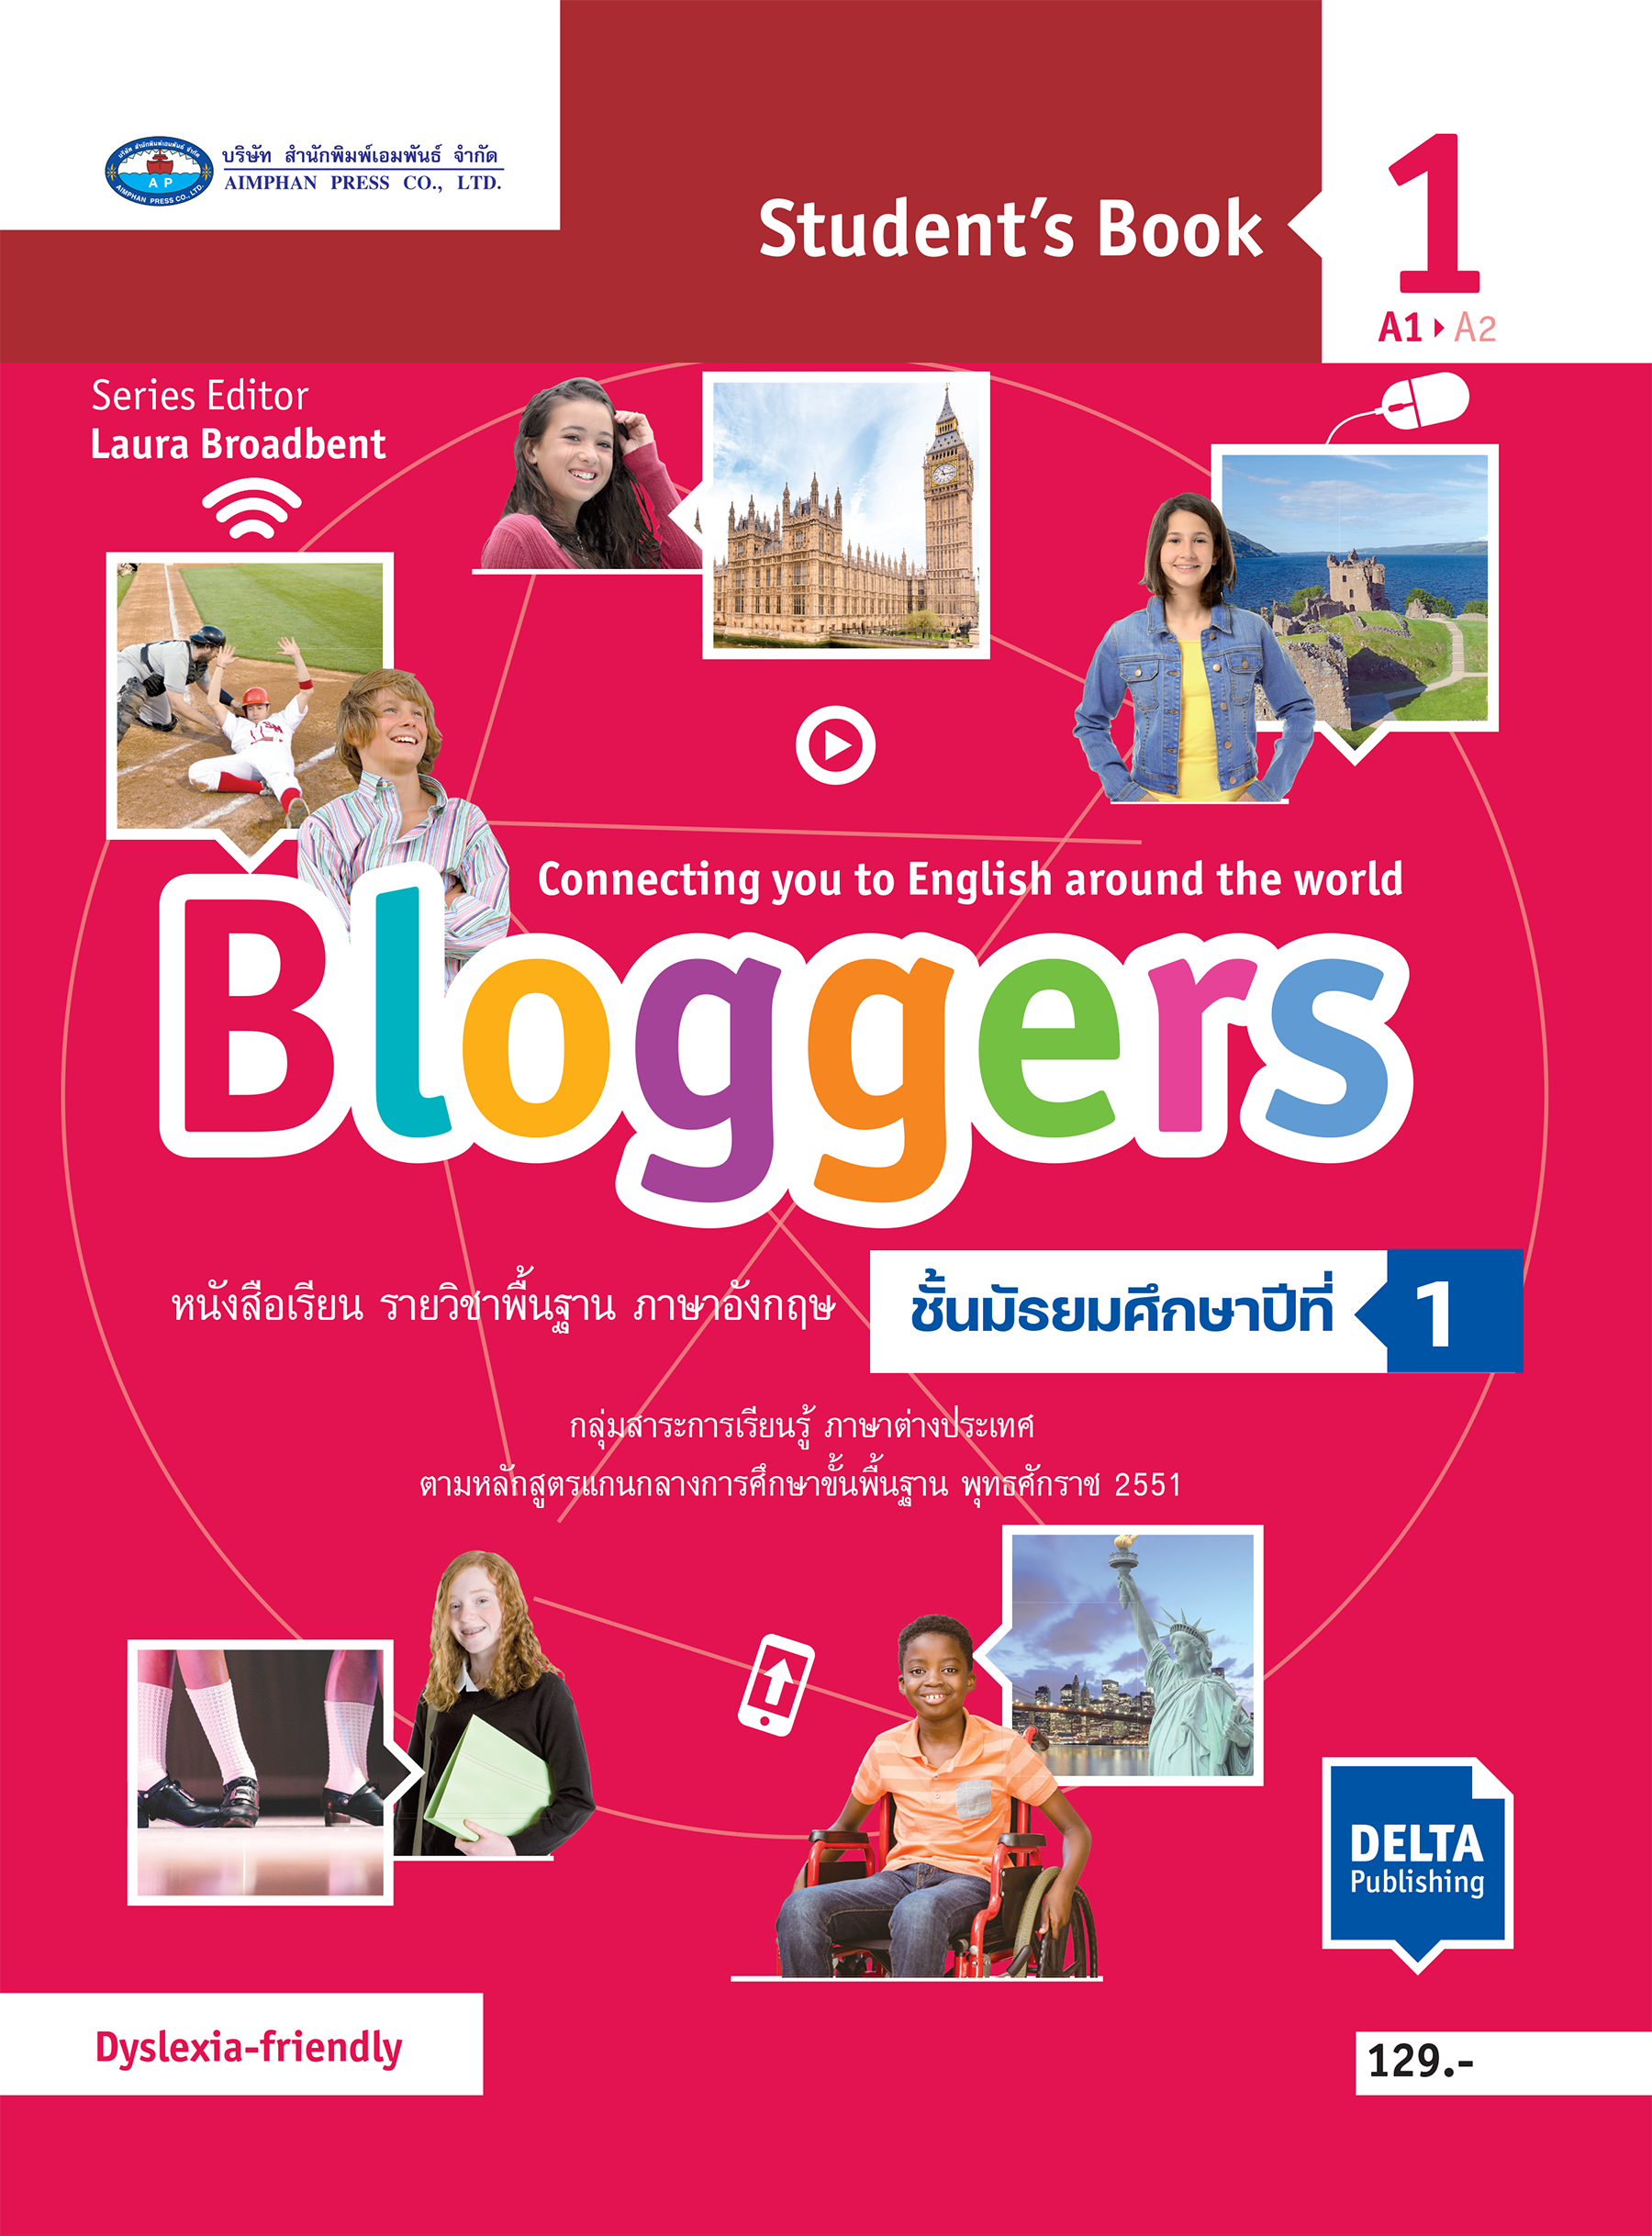 หนังสือเรียน Bloggers Student'S Book 1 - บริษัท สำนักพิมพ์เอมพันธ์ จำกัด  [Aimphan Press Co.,Ltd.]